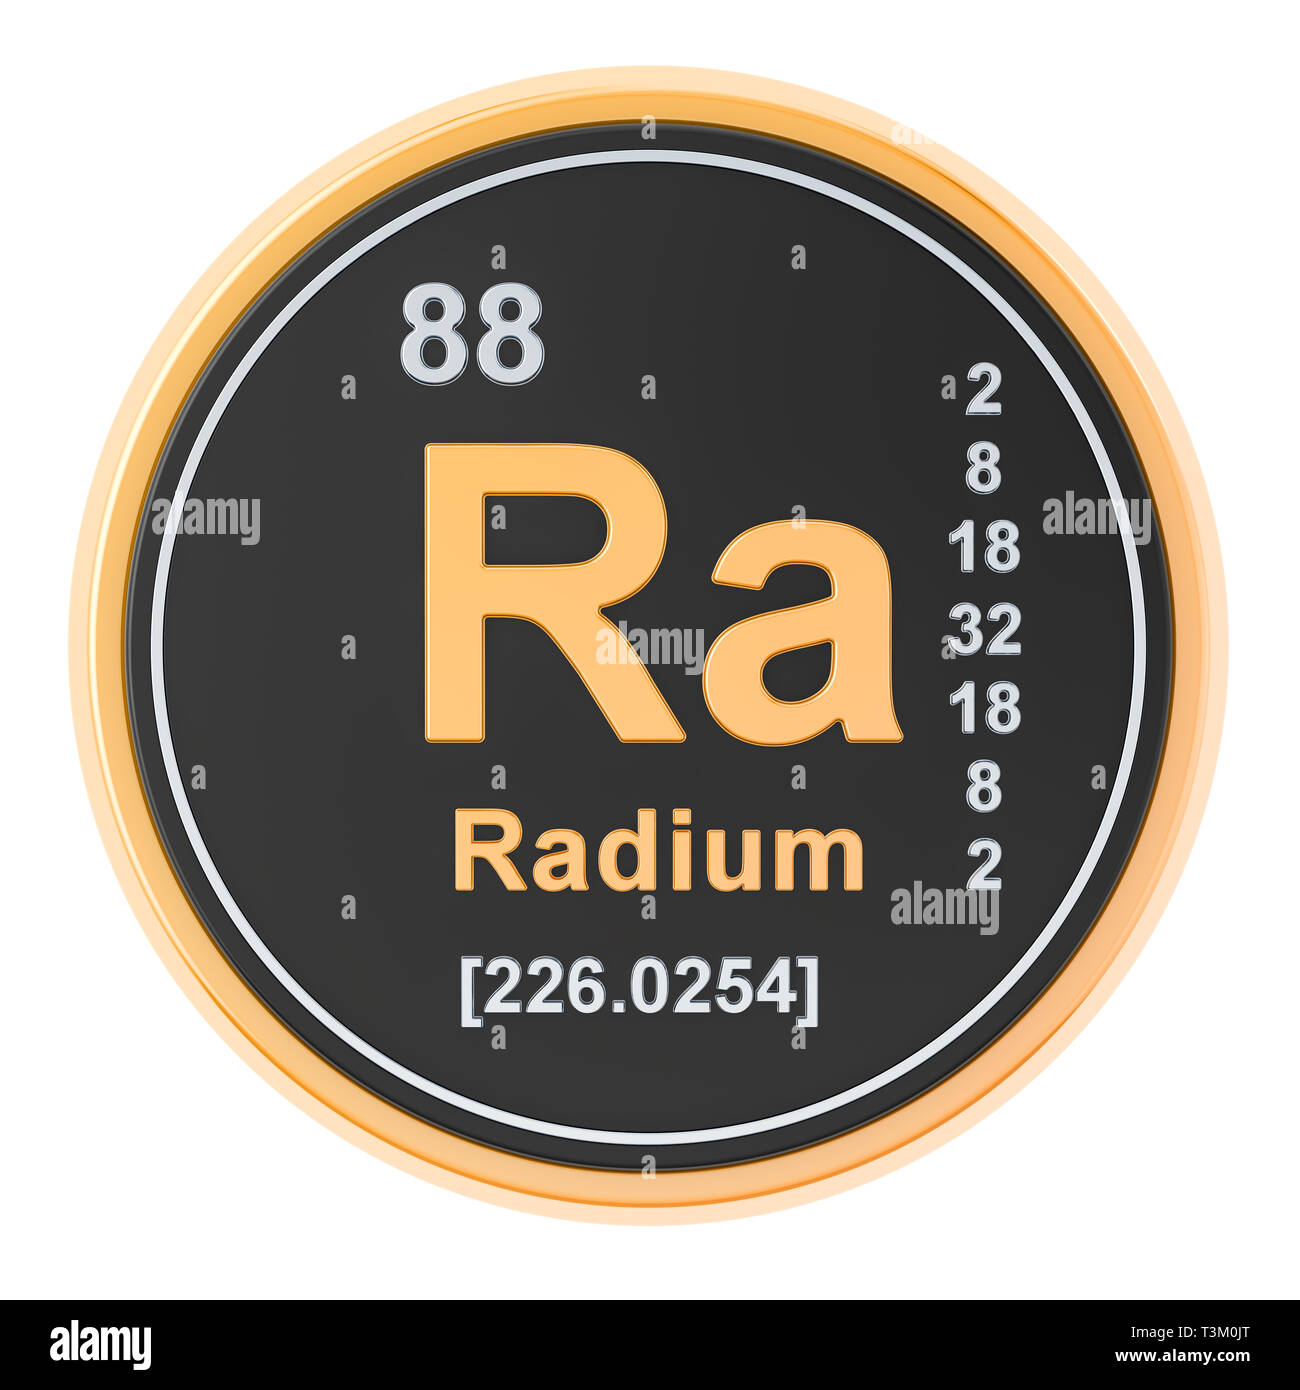 Радий элемент таблицы. Родий химический элемент. Элемент Radium. Ra химический элемент. Радиоактивный элемент Радий.